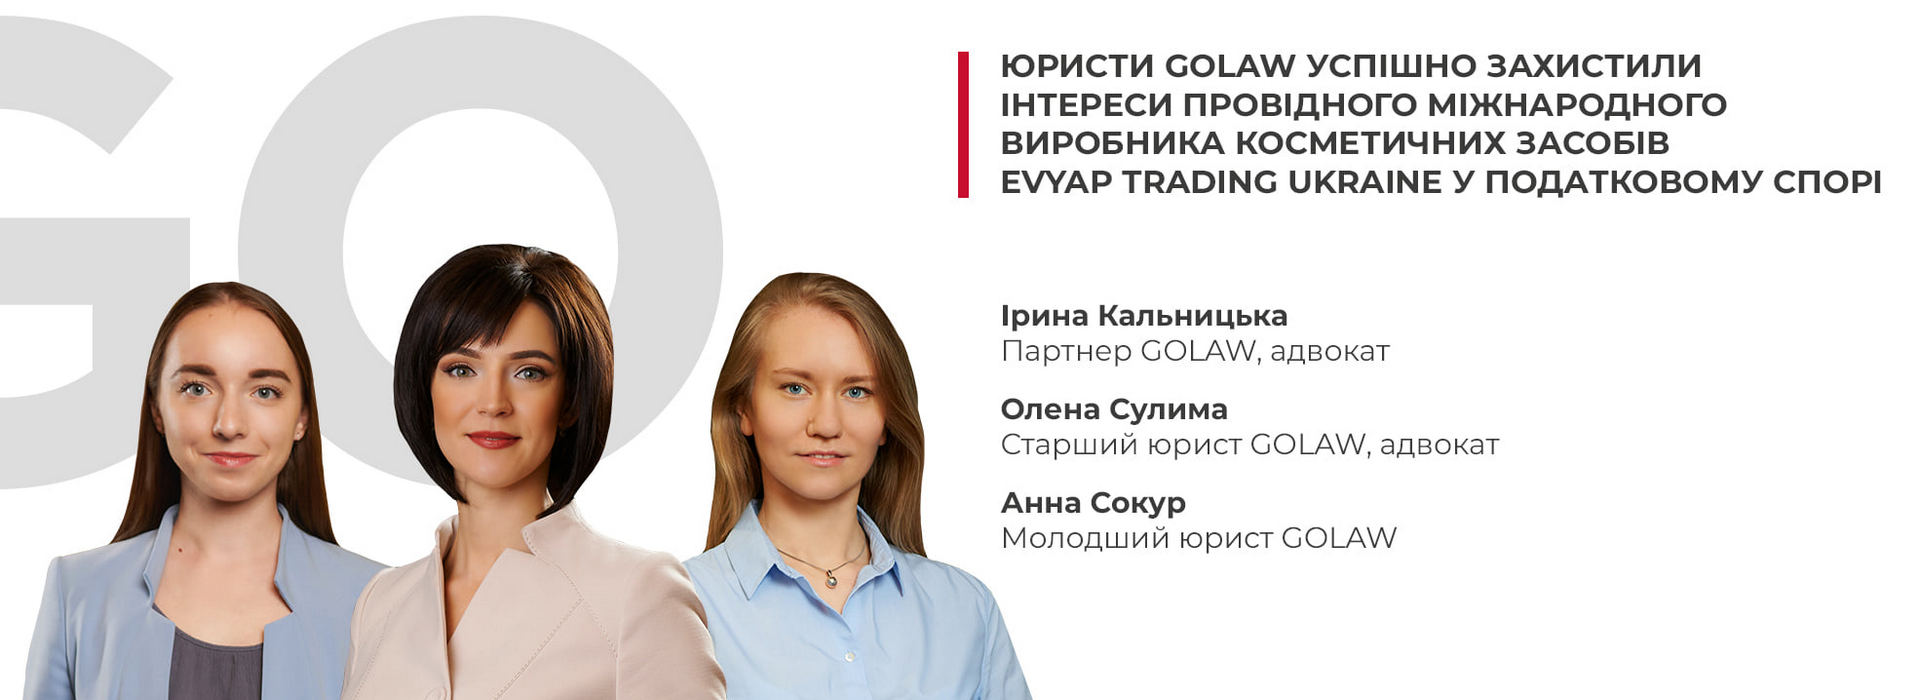 Юристи GOLAW успішно захистили інтереси провідного міжнародного виробника косметичних засобів Evyap Trading Ukraine у податковому спорі